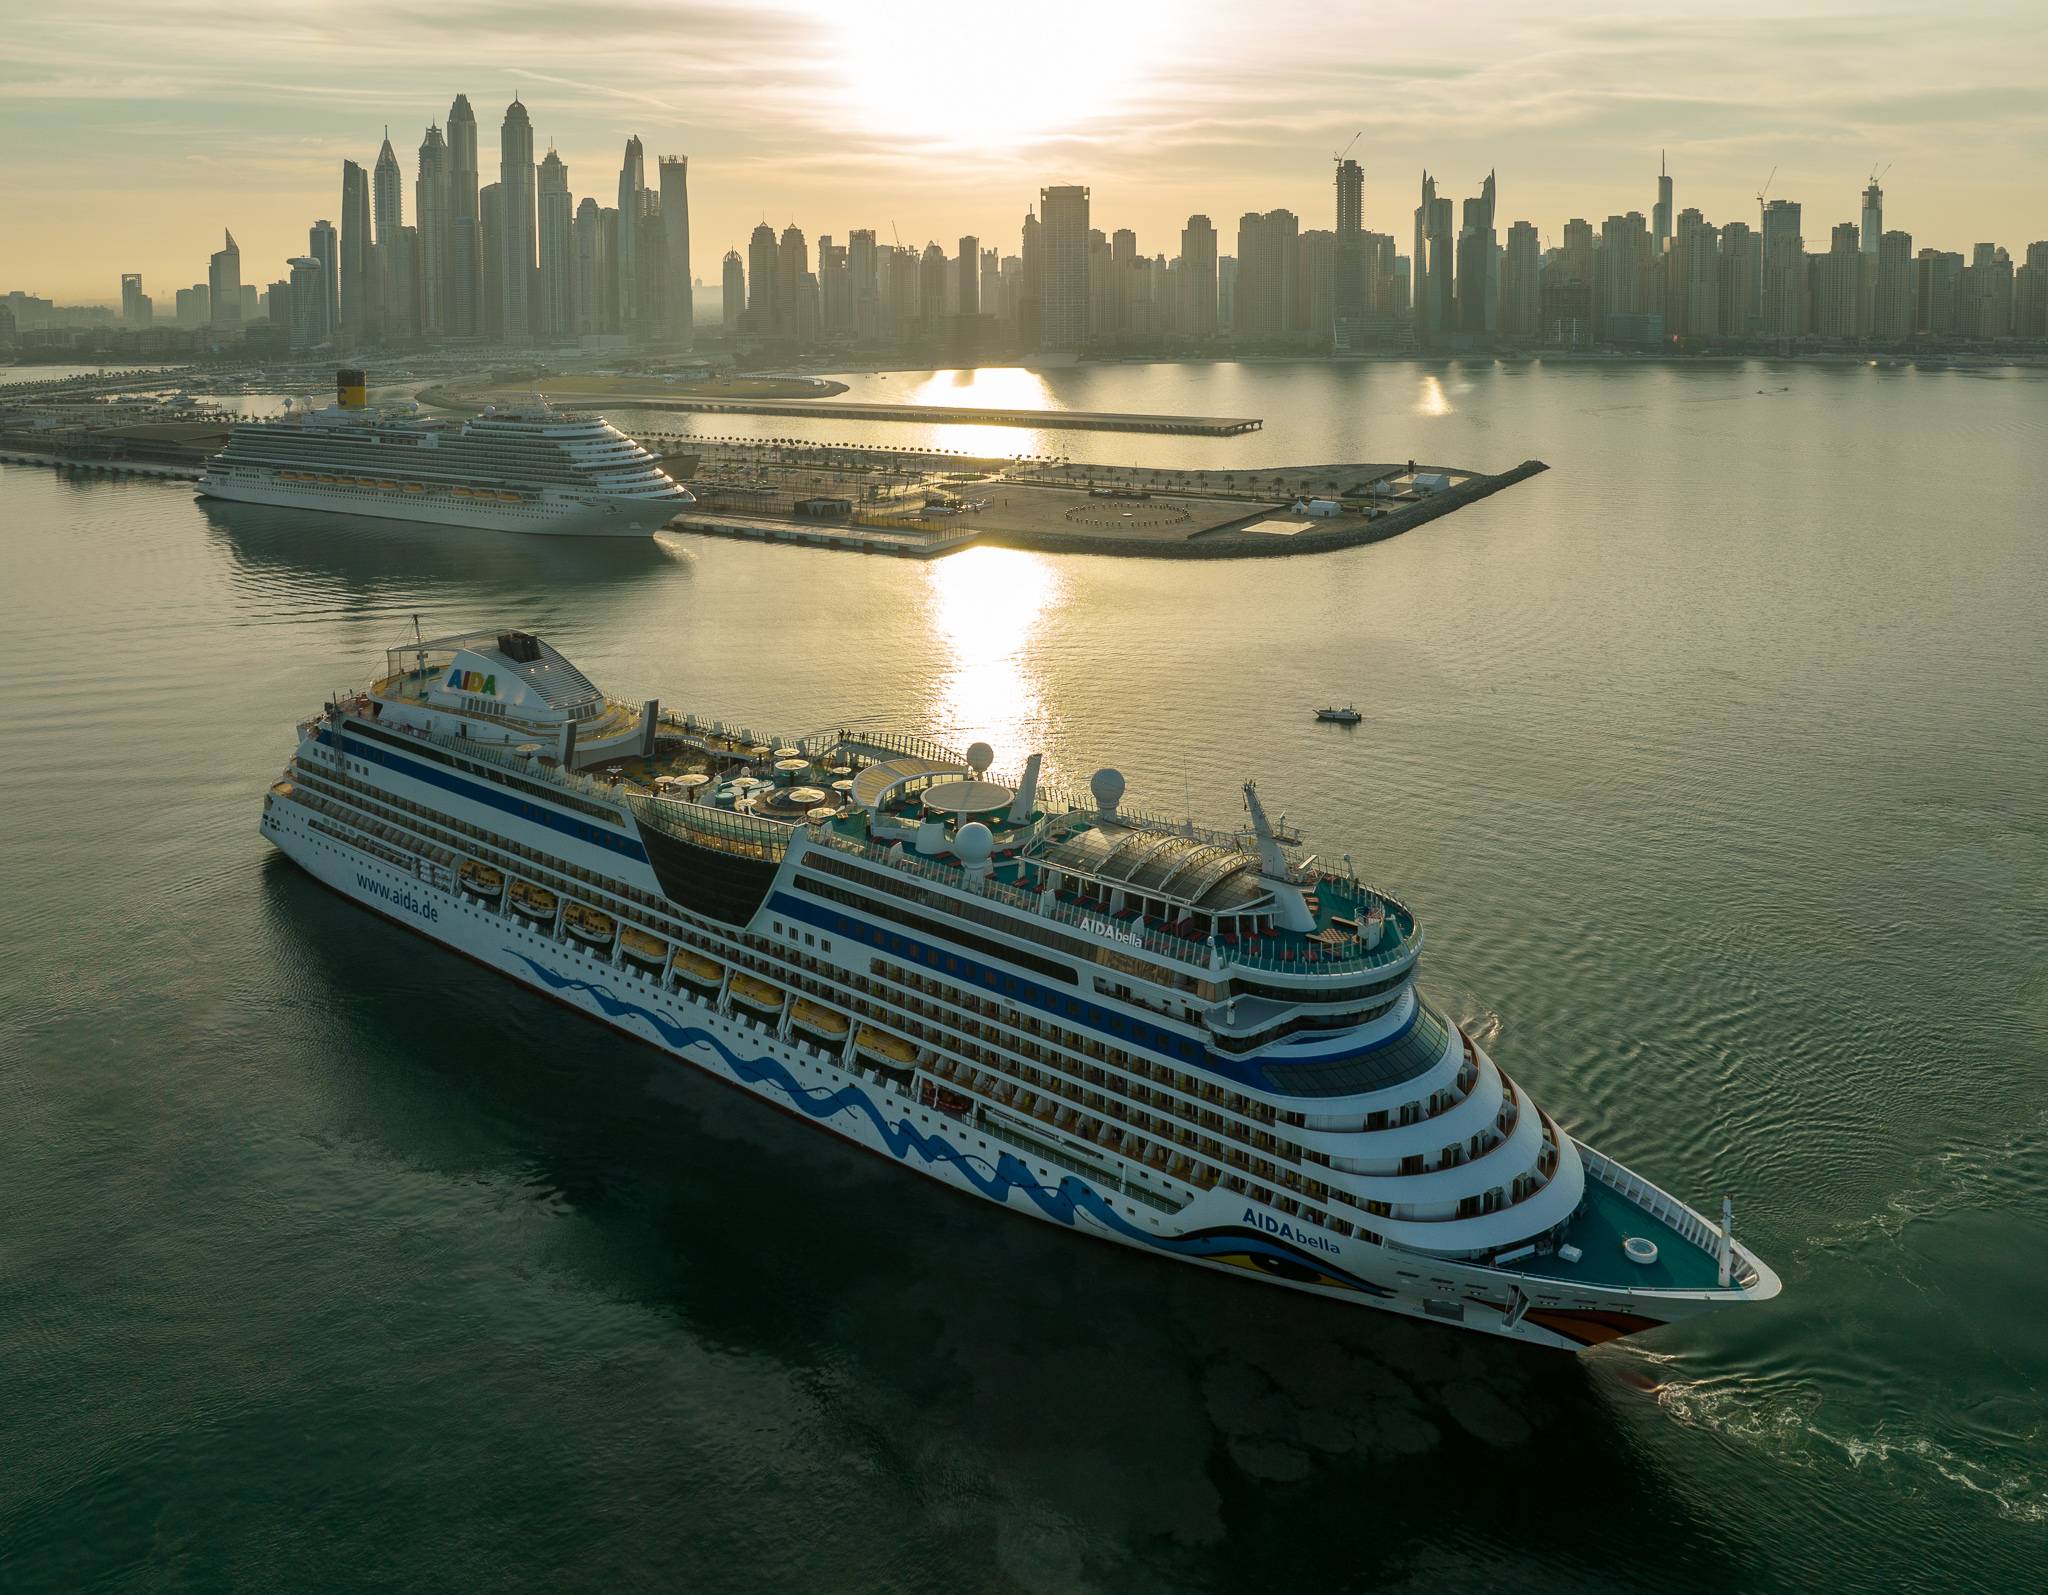 Cruise Dubai